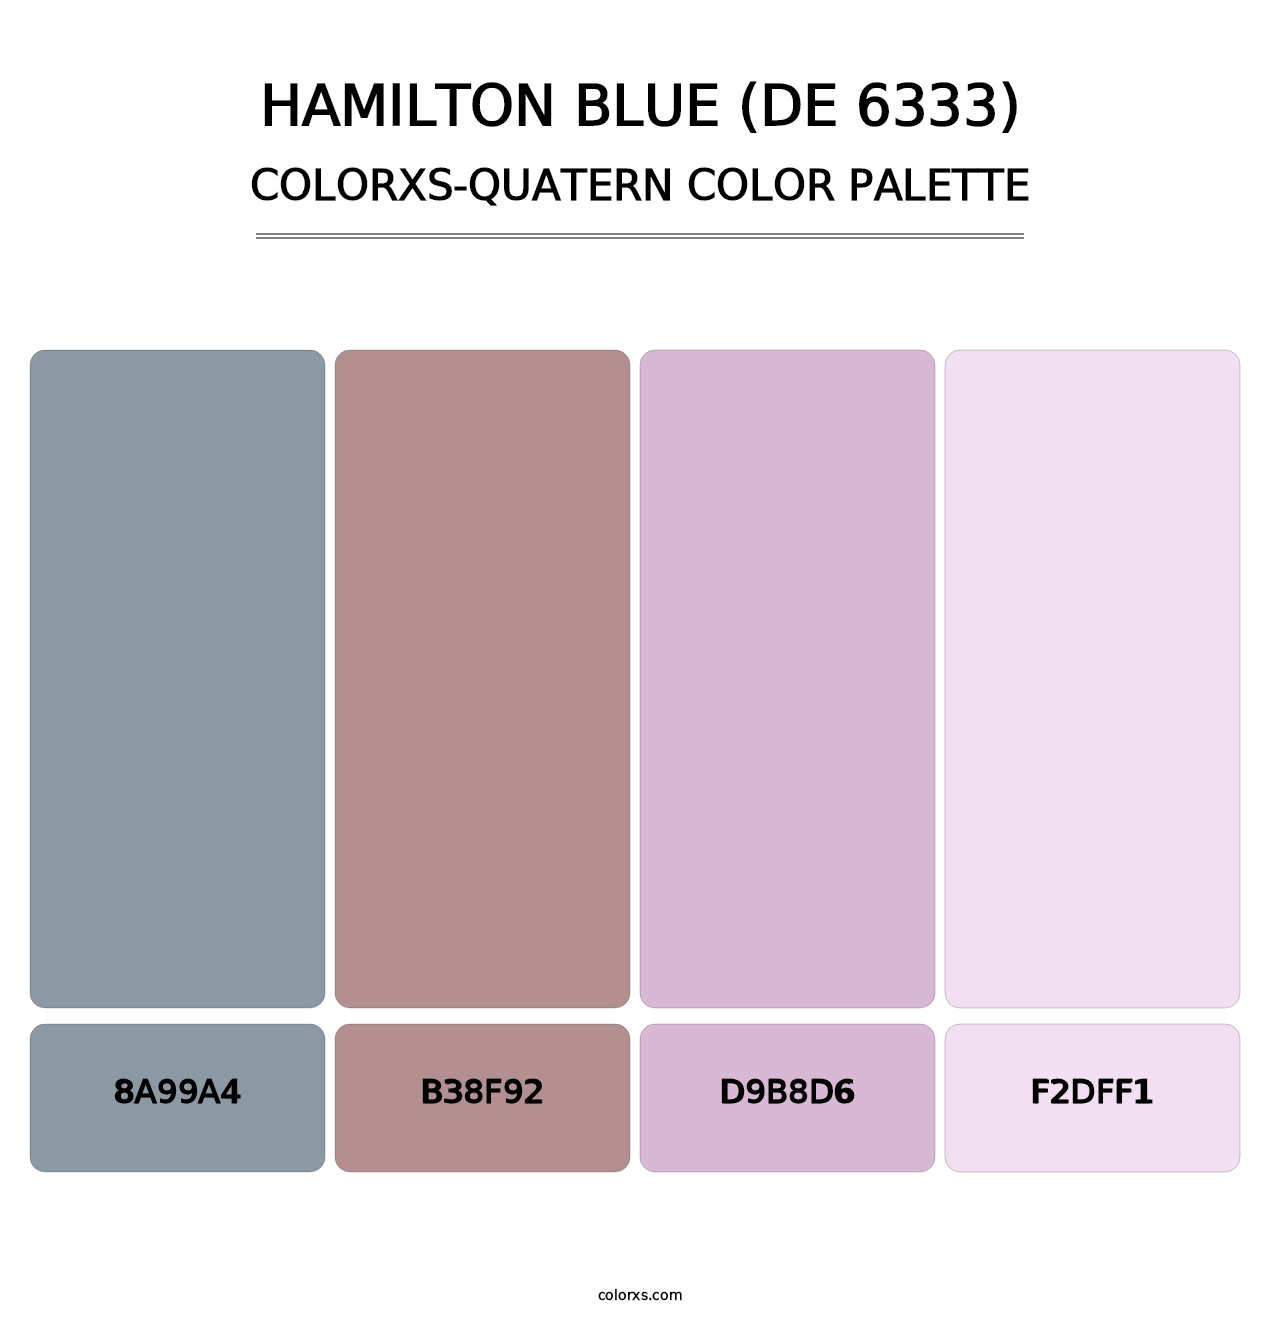 Hamilton Blue (DE 6333) - Colorxs Quatern Palette